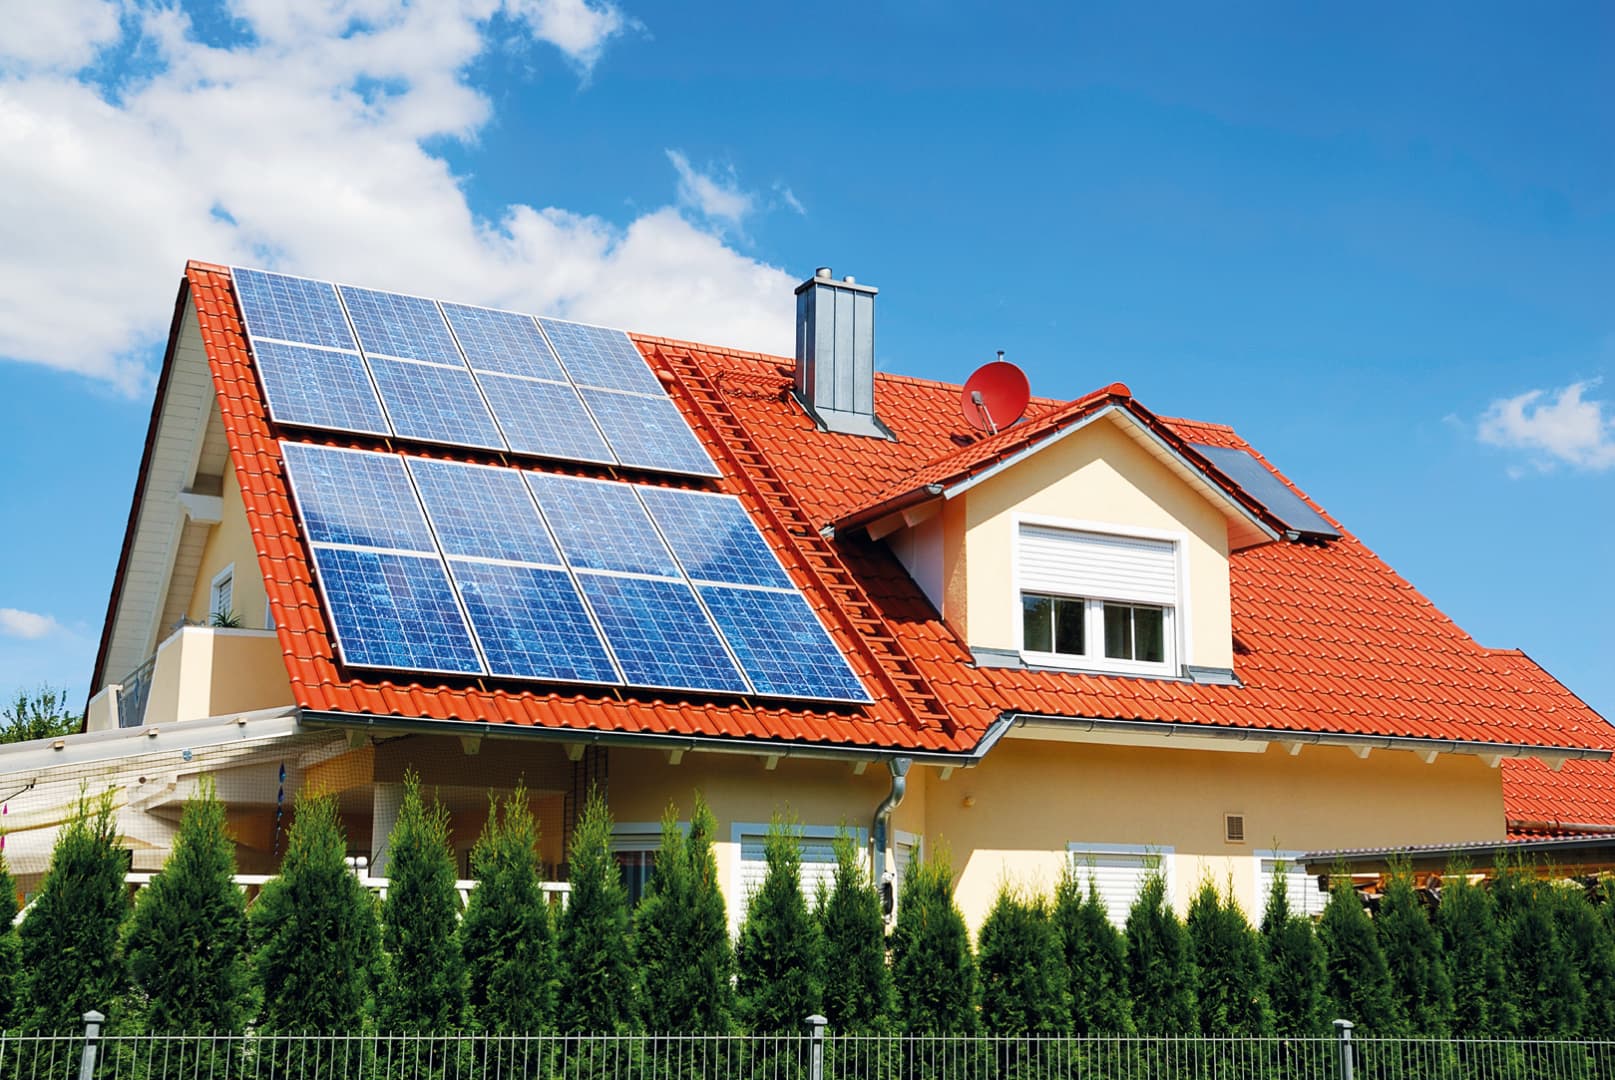 Dél-Szlovákiában is egyre nagyobb teret hódítanak a fotovoltaikus napelemes rendszerek